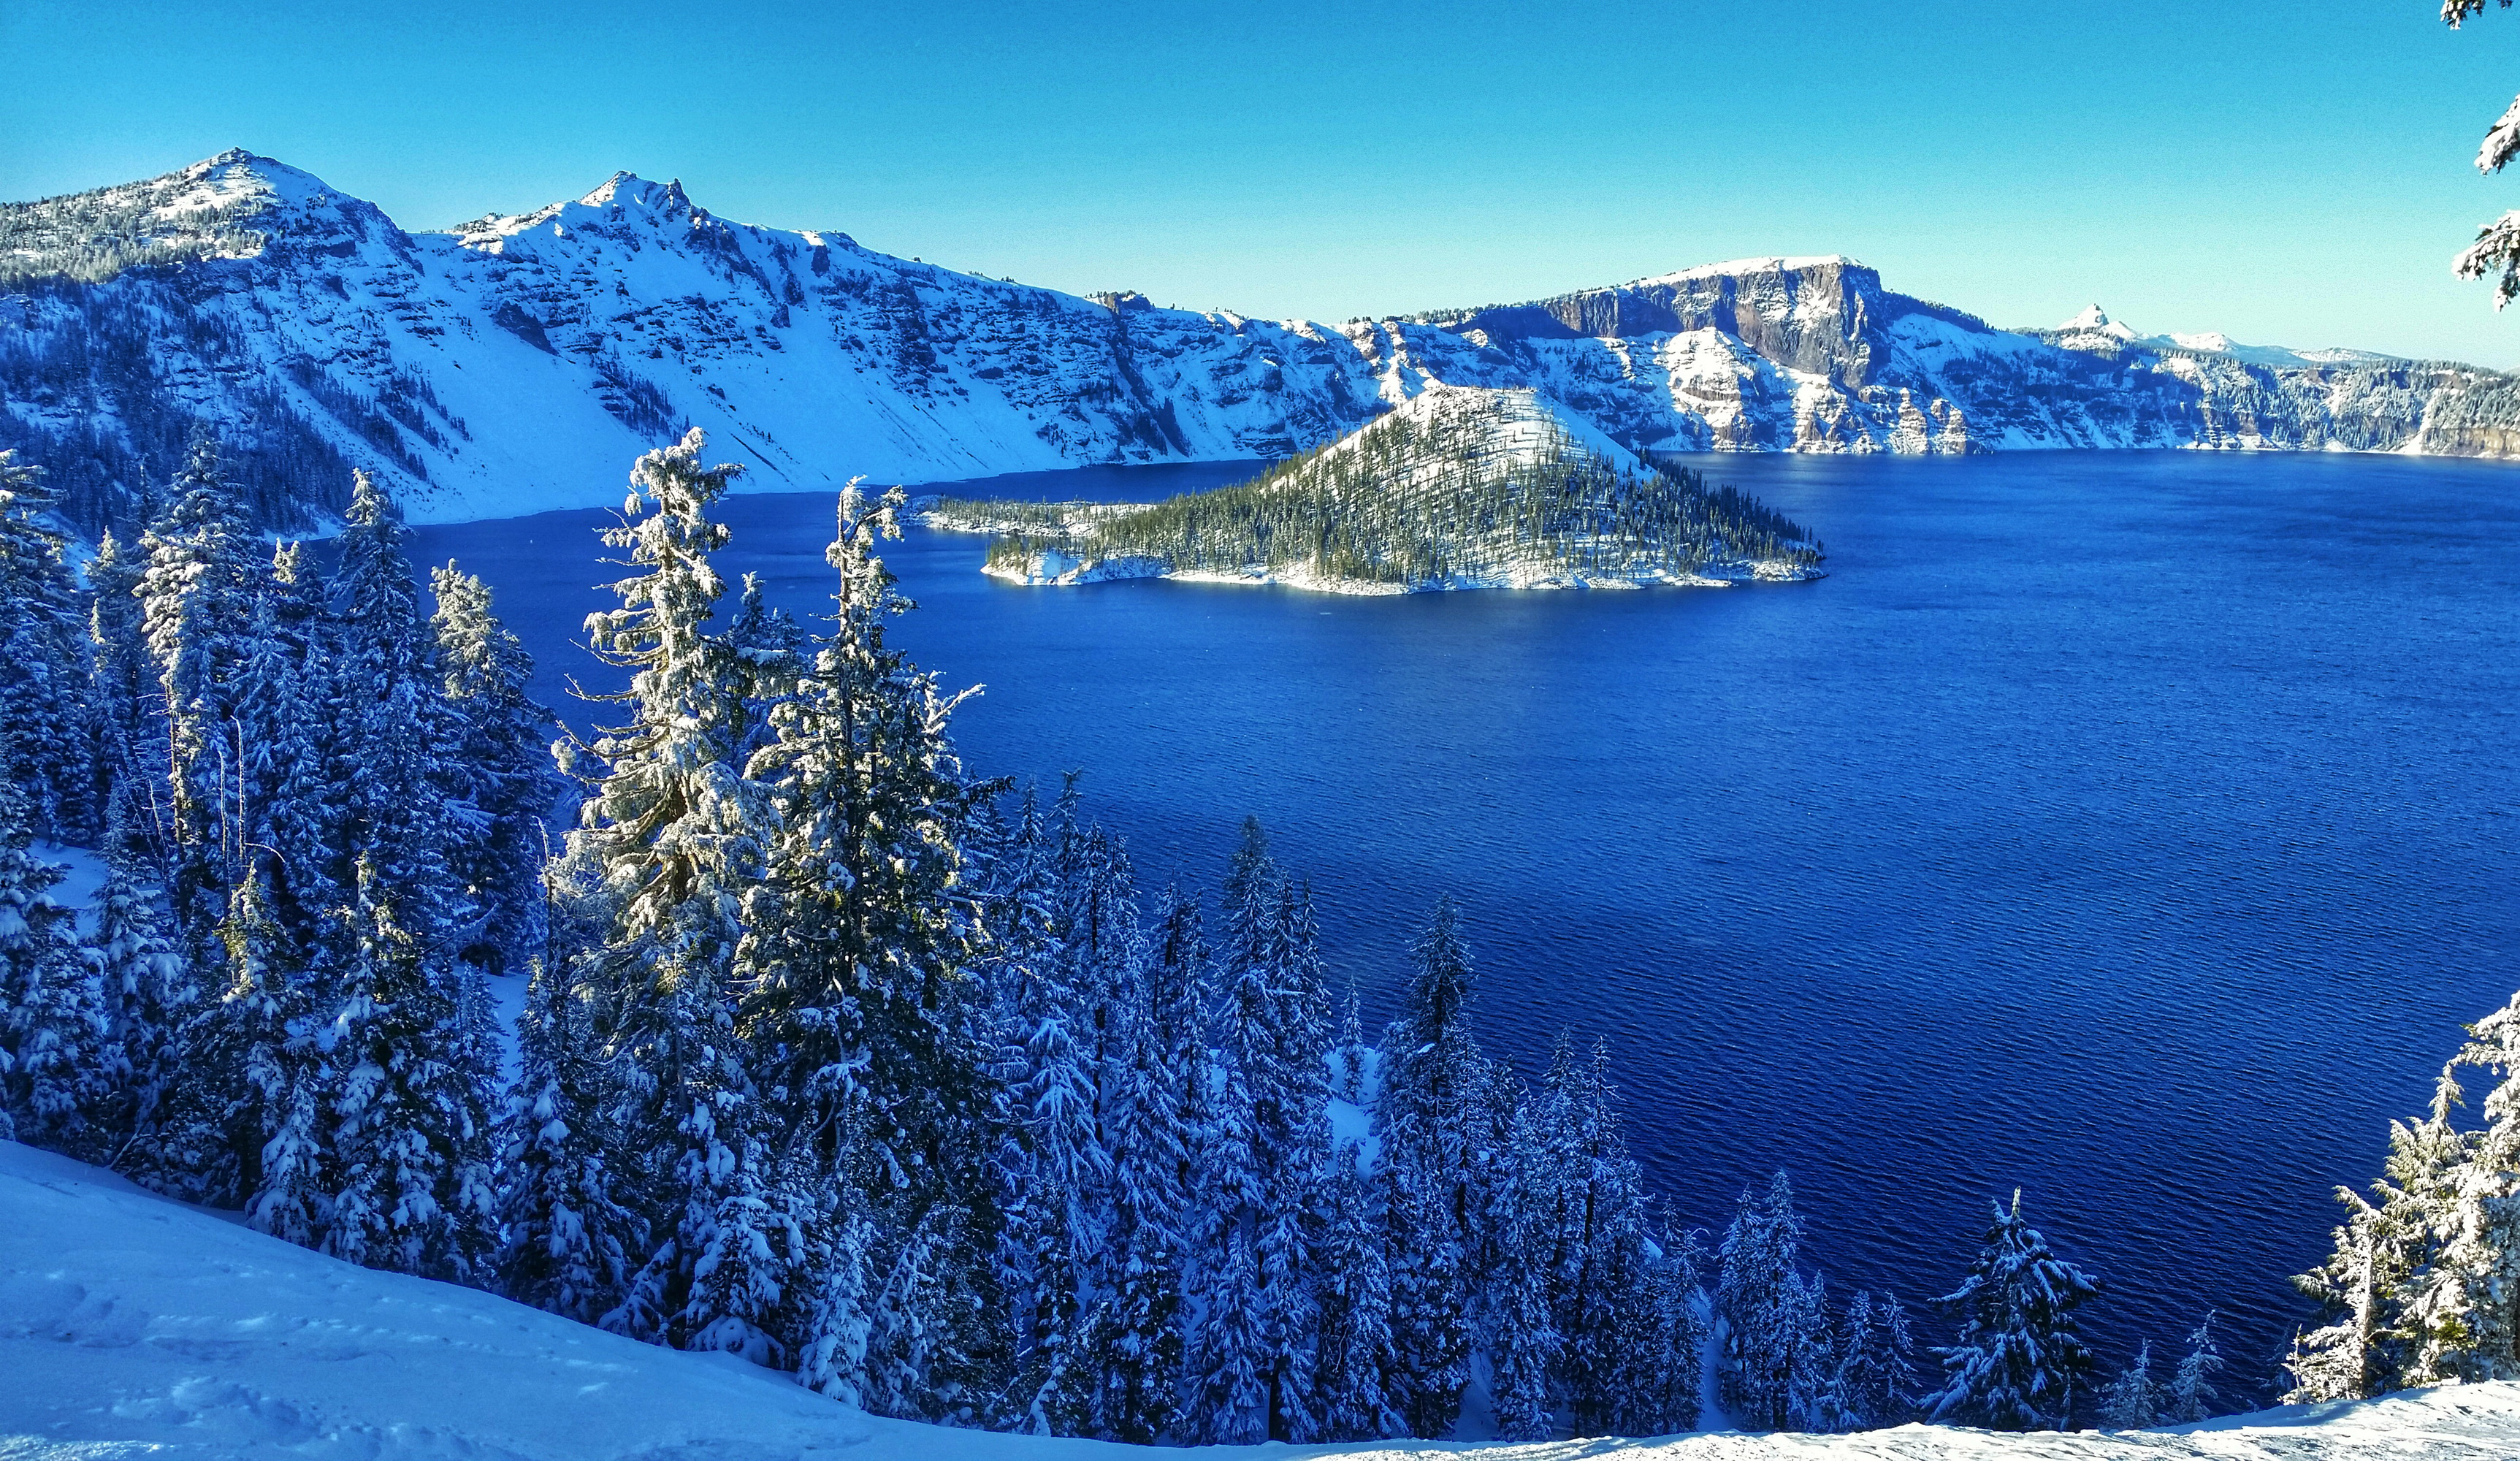 Скачать обои бесплатно Зима, Снег, Гора, Озеро, Лес, Дерево, Земля/природа картинка на рабочий стол ПК